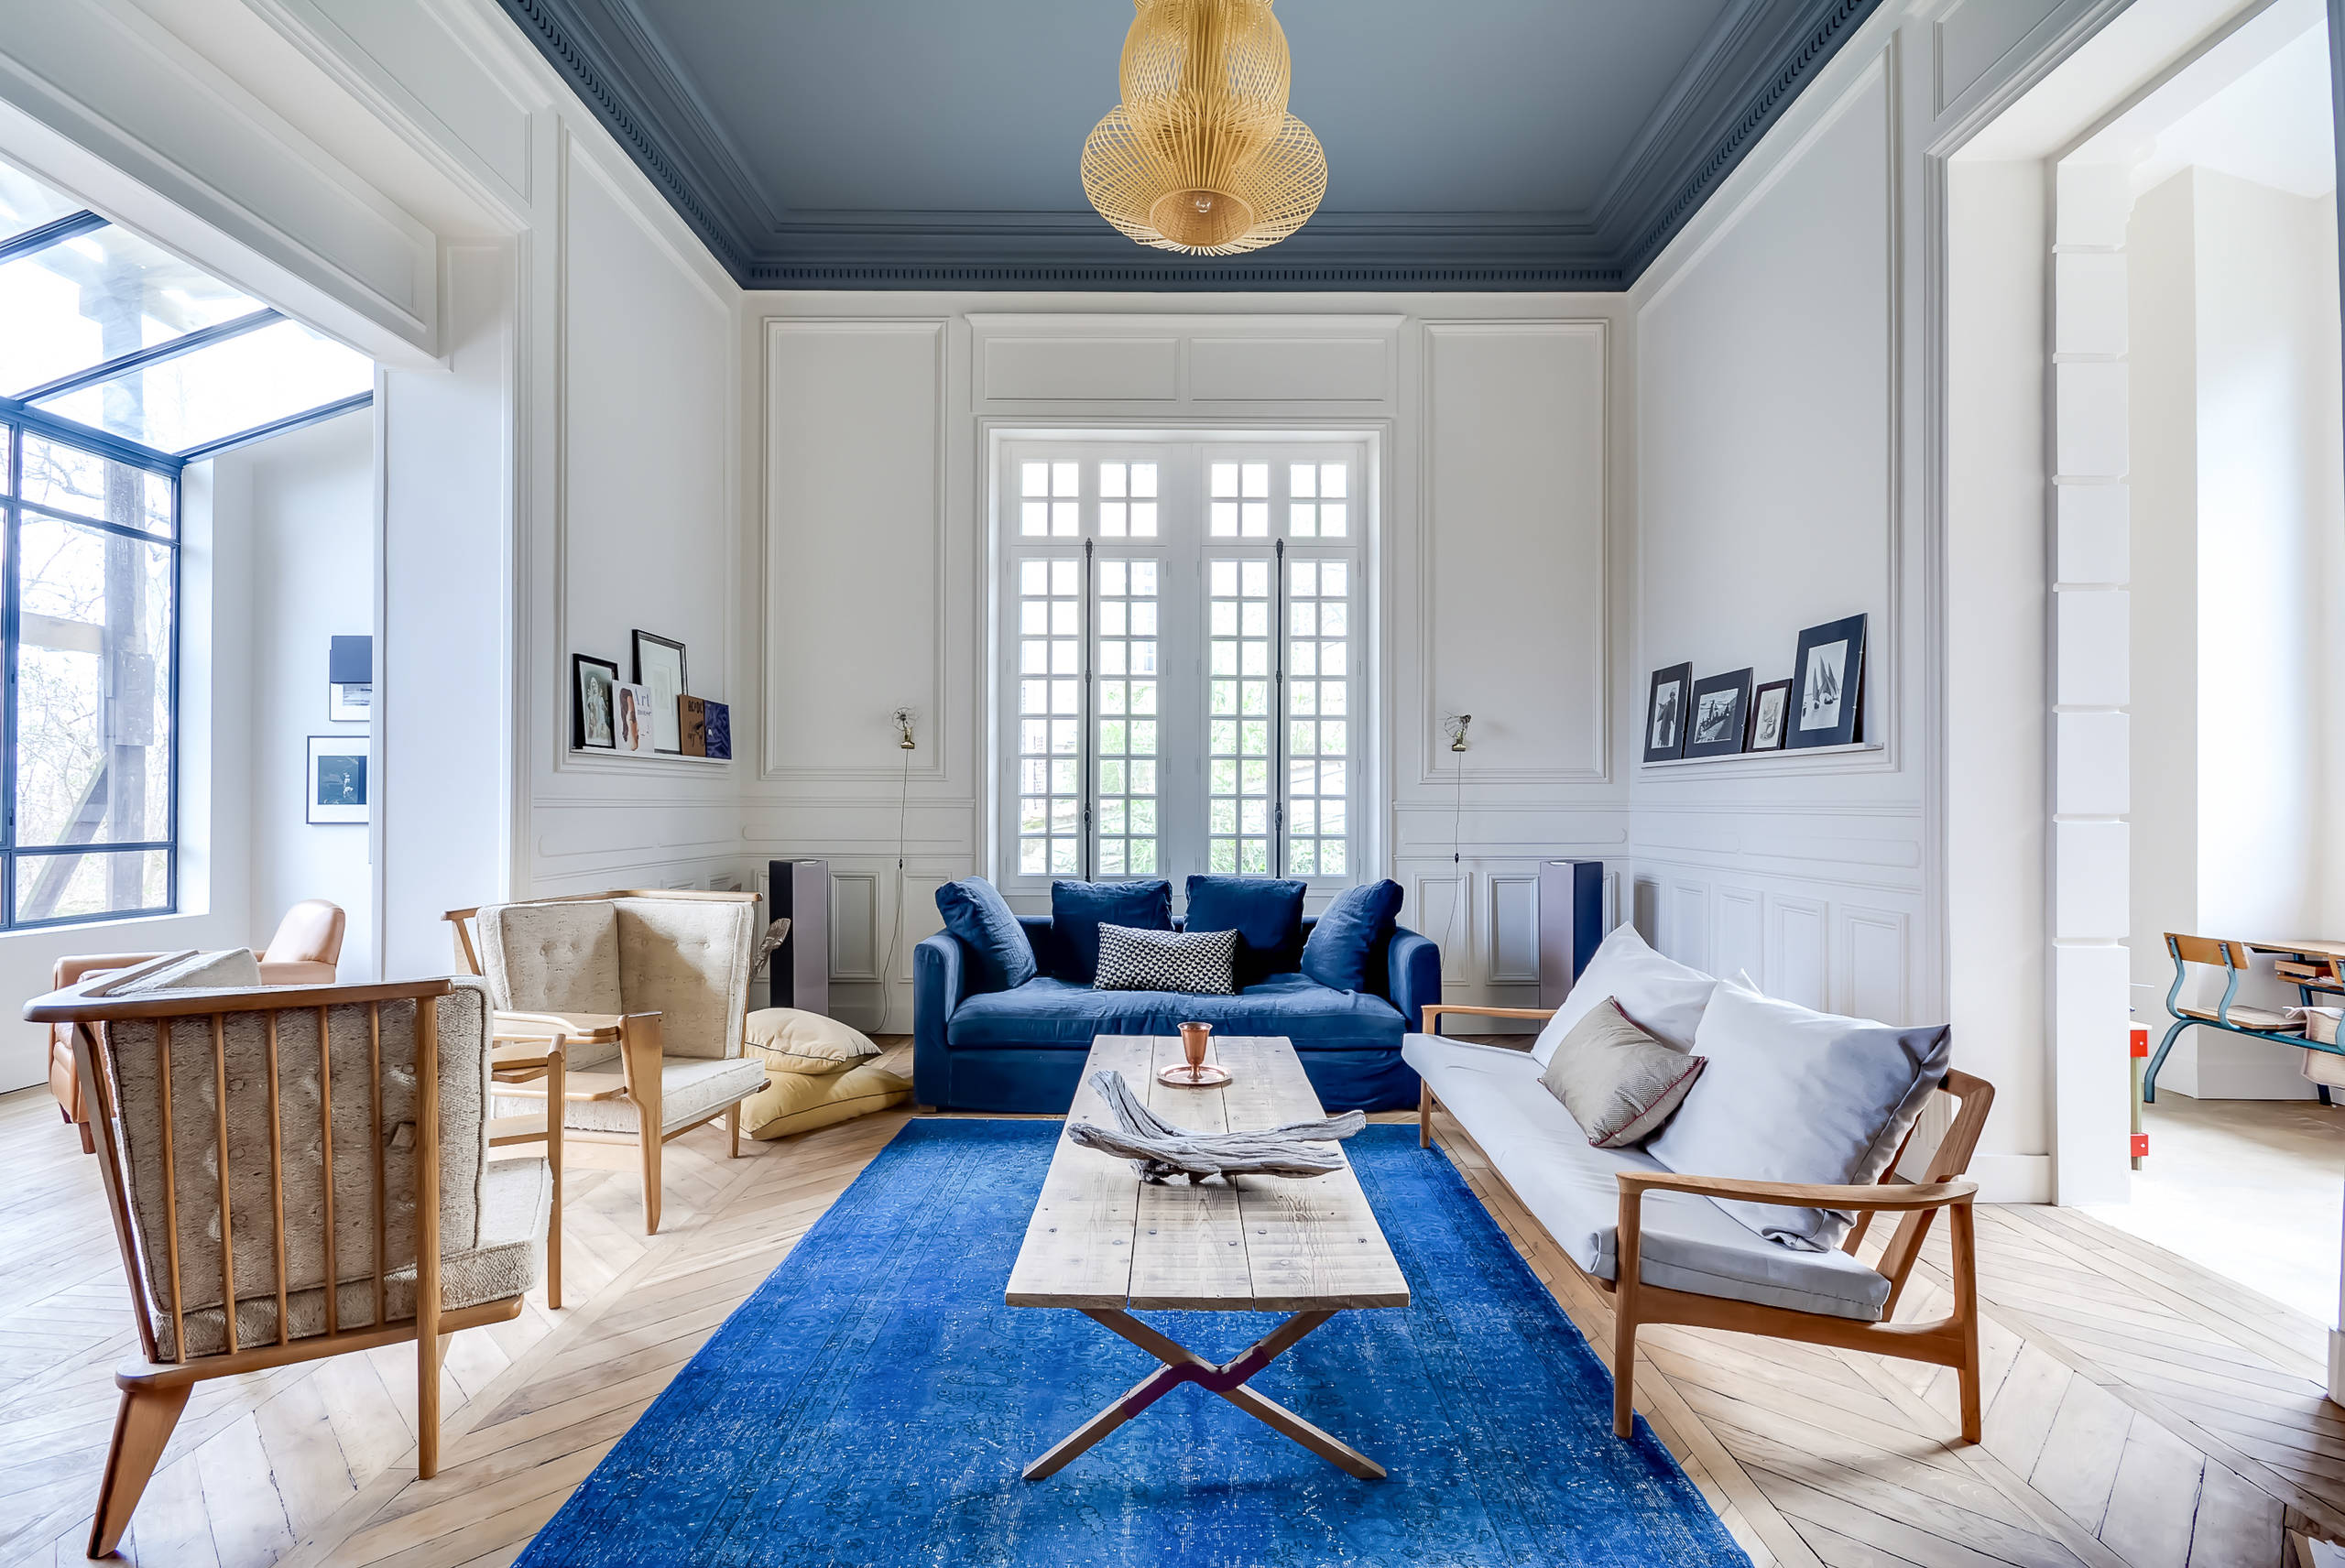 Как расставить диваны и кресла: варианты с одним диваном, двумя или тремядиванами в одной комнате